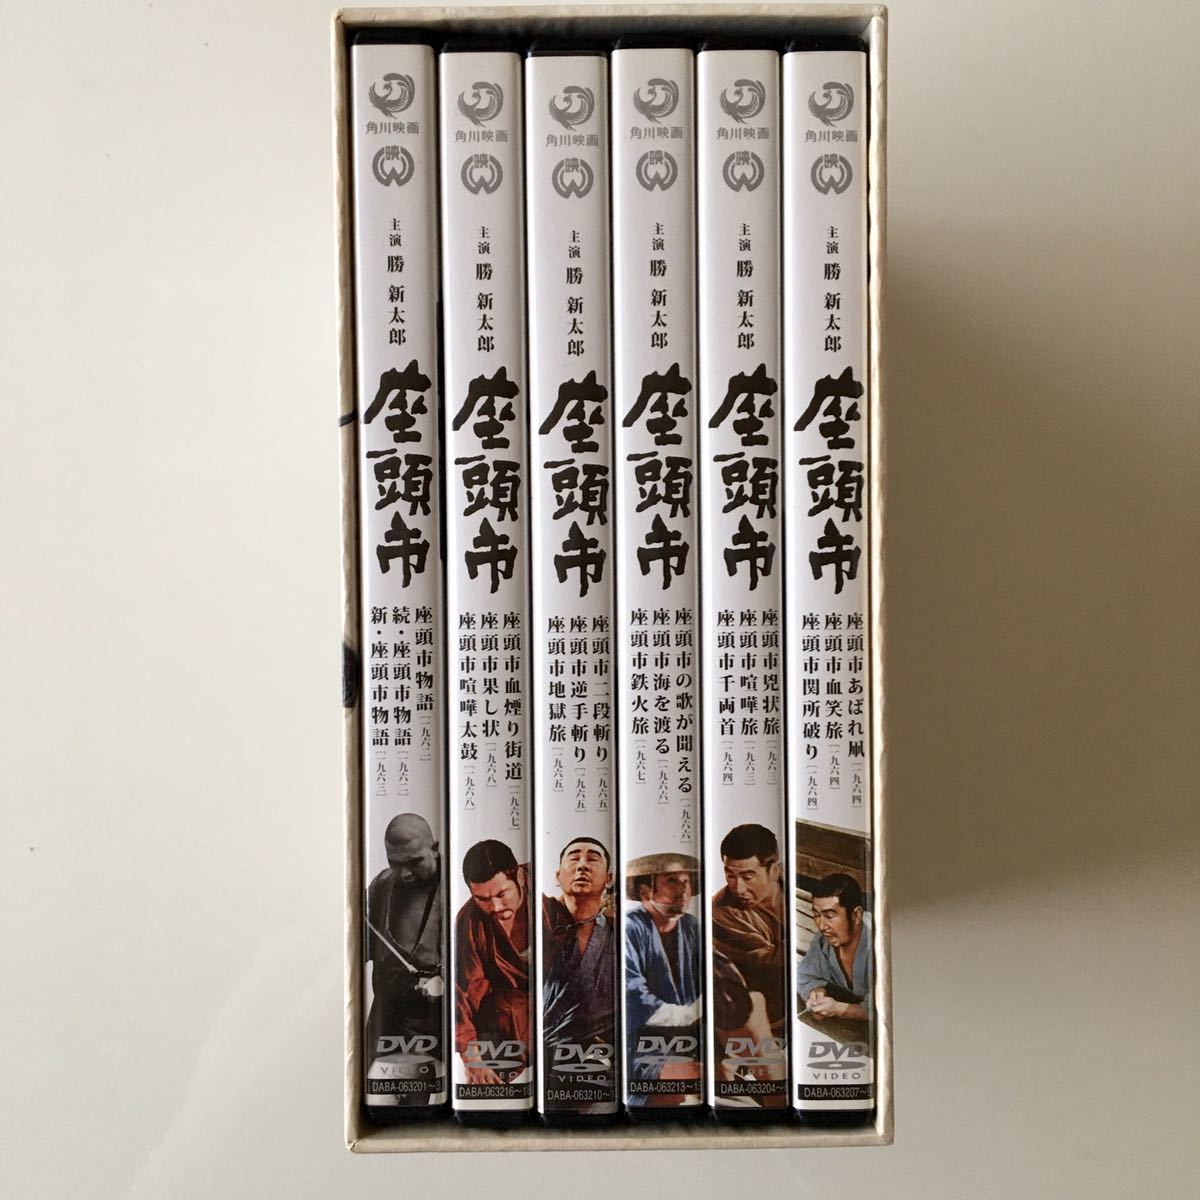 座頭市 DVD-BOX 勝新太郎 18話_画像2